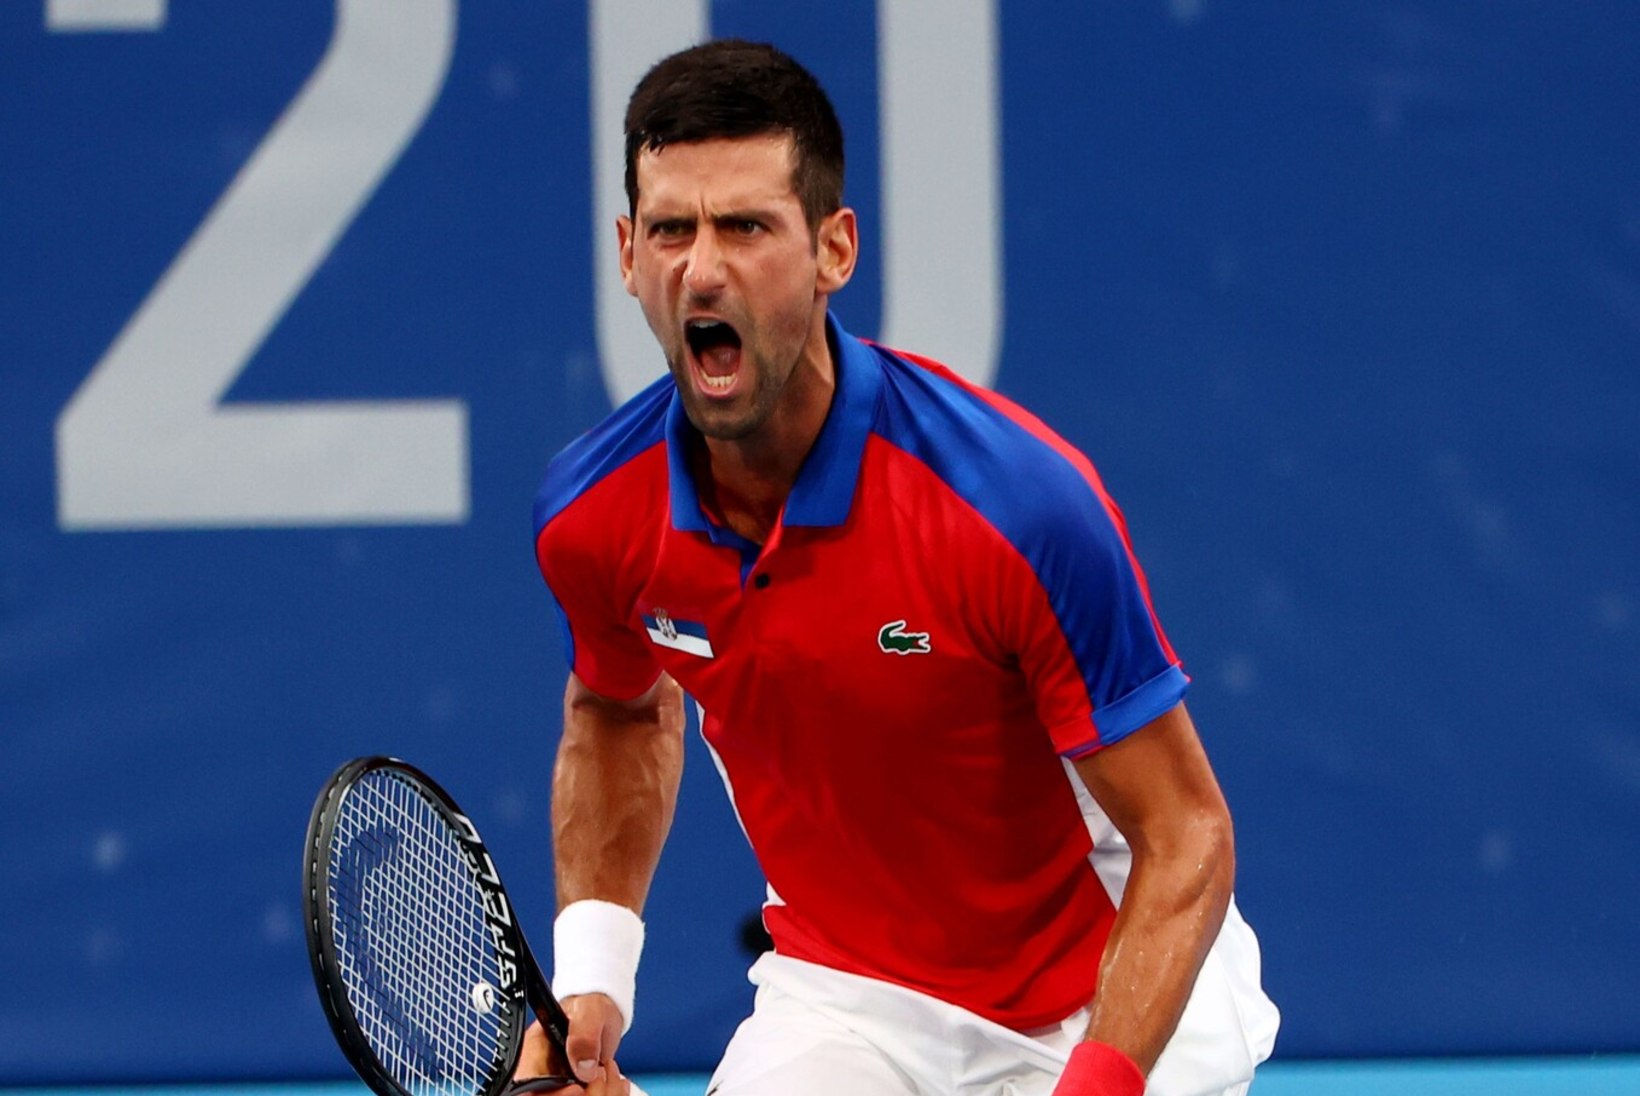 ÕL TOKYOS | AJALUGU TULEB LÄHEMALE: Djokovic liigub ulmelise kuldse slämmi kursil!